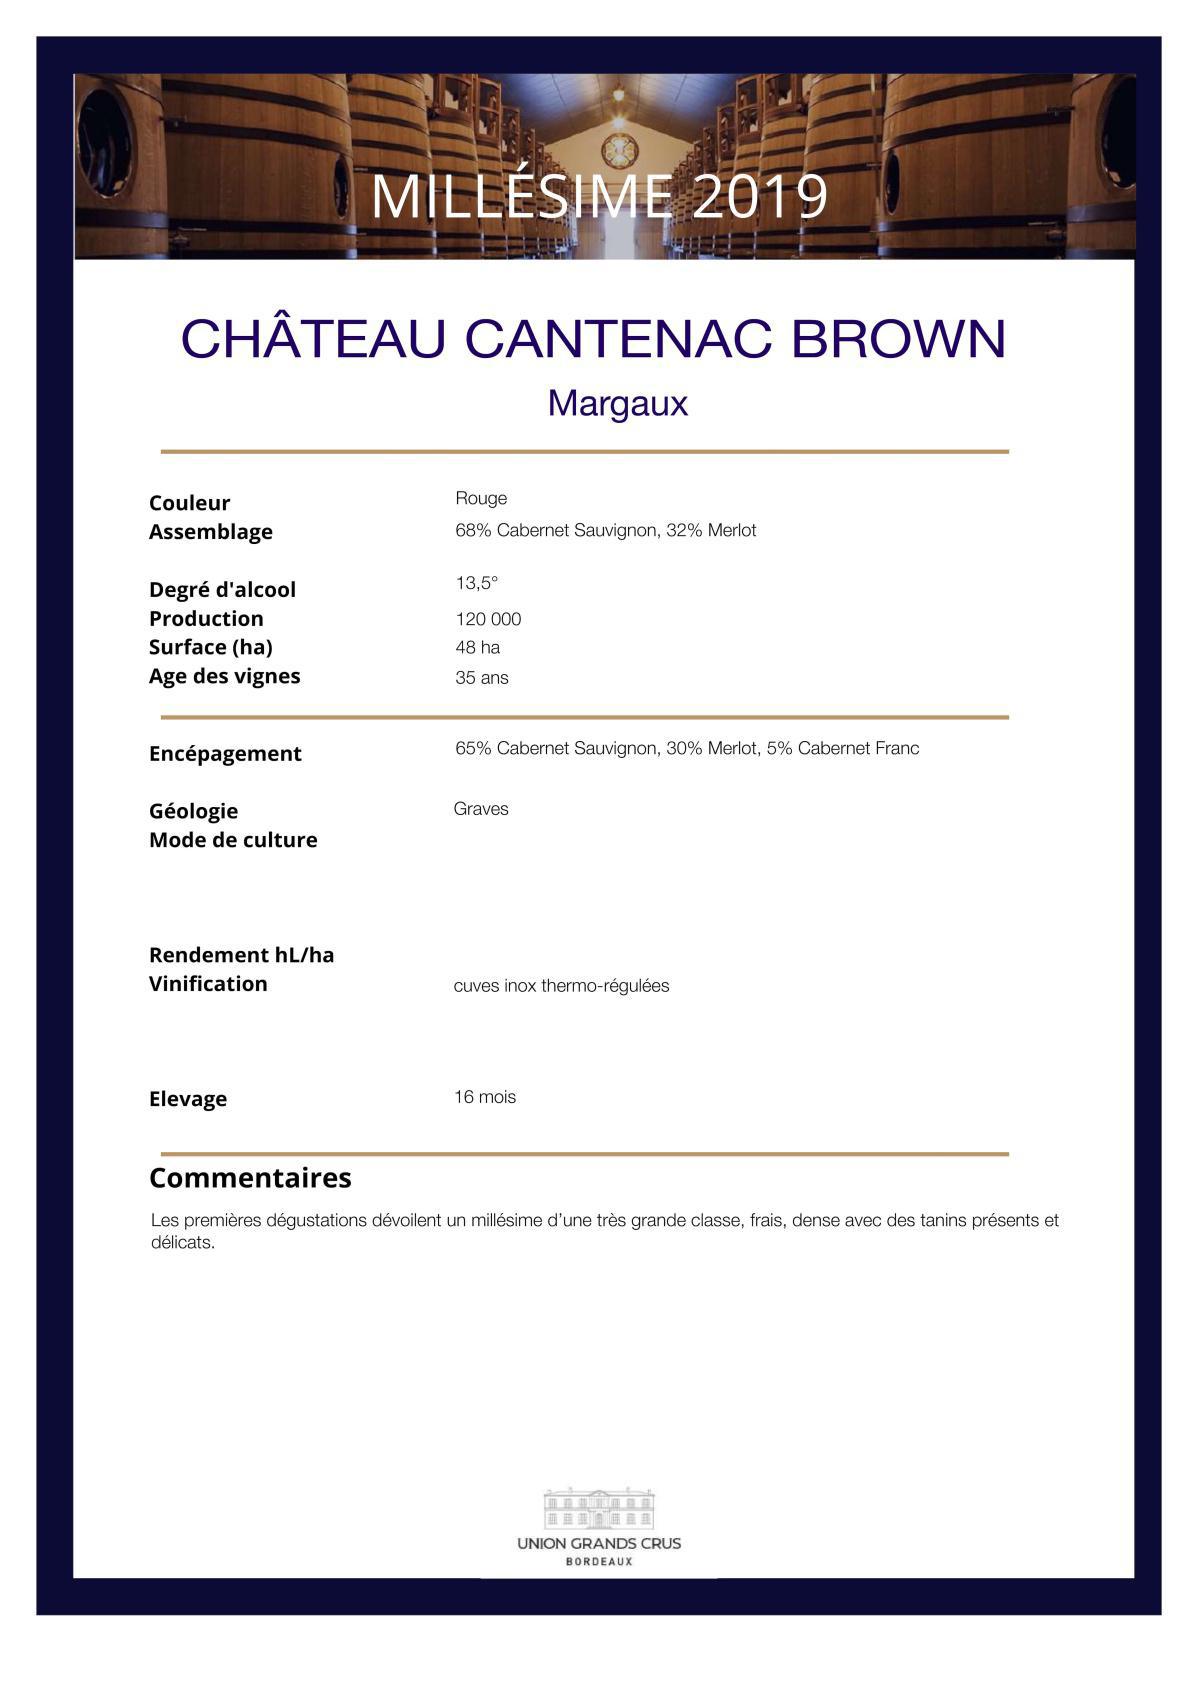 Château Cantenac Brown